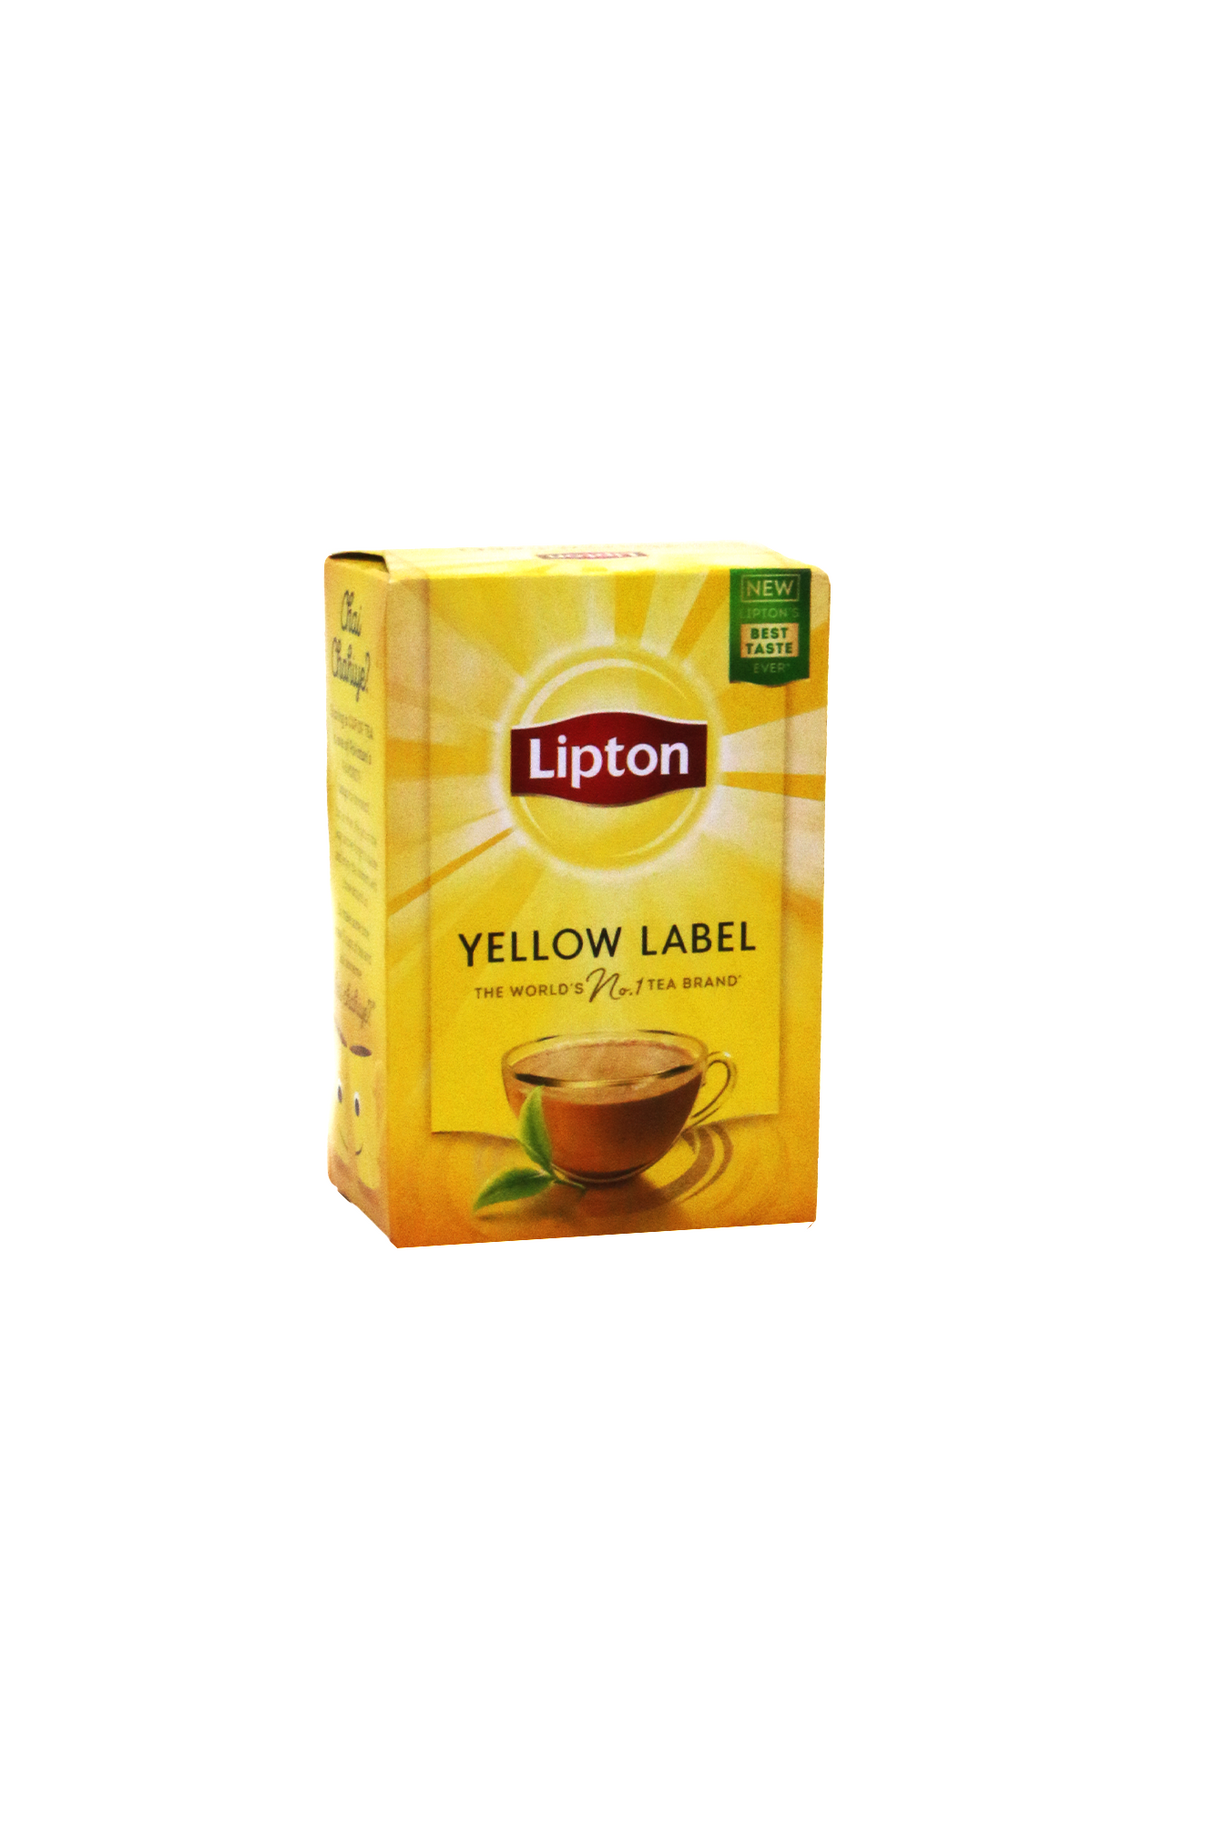 lipton tea 70g